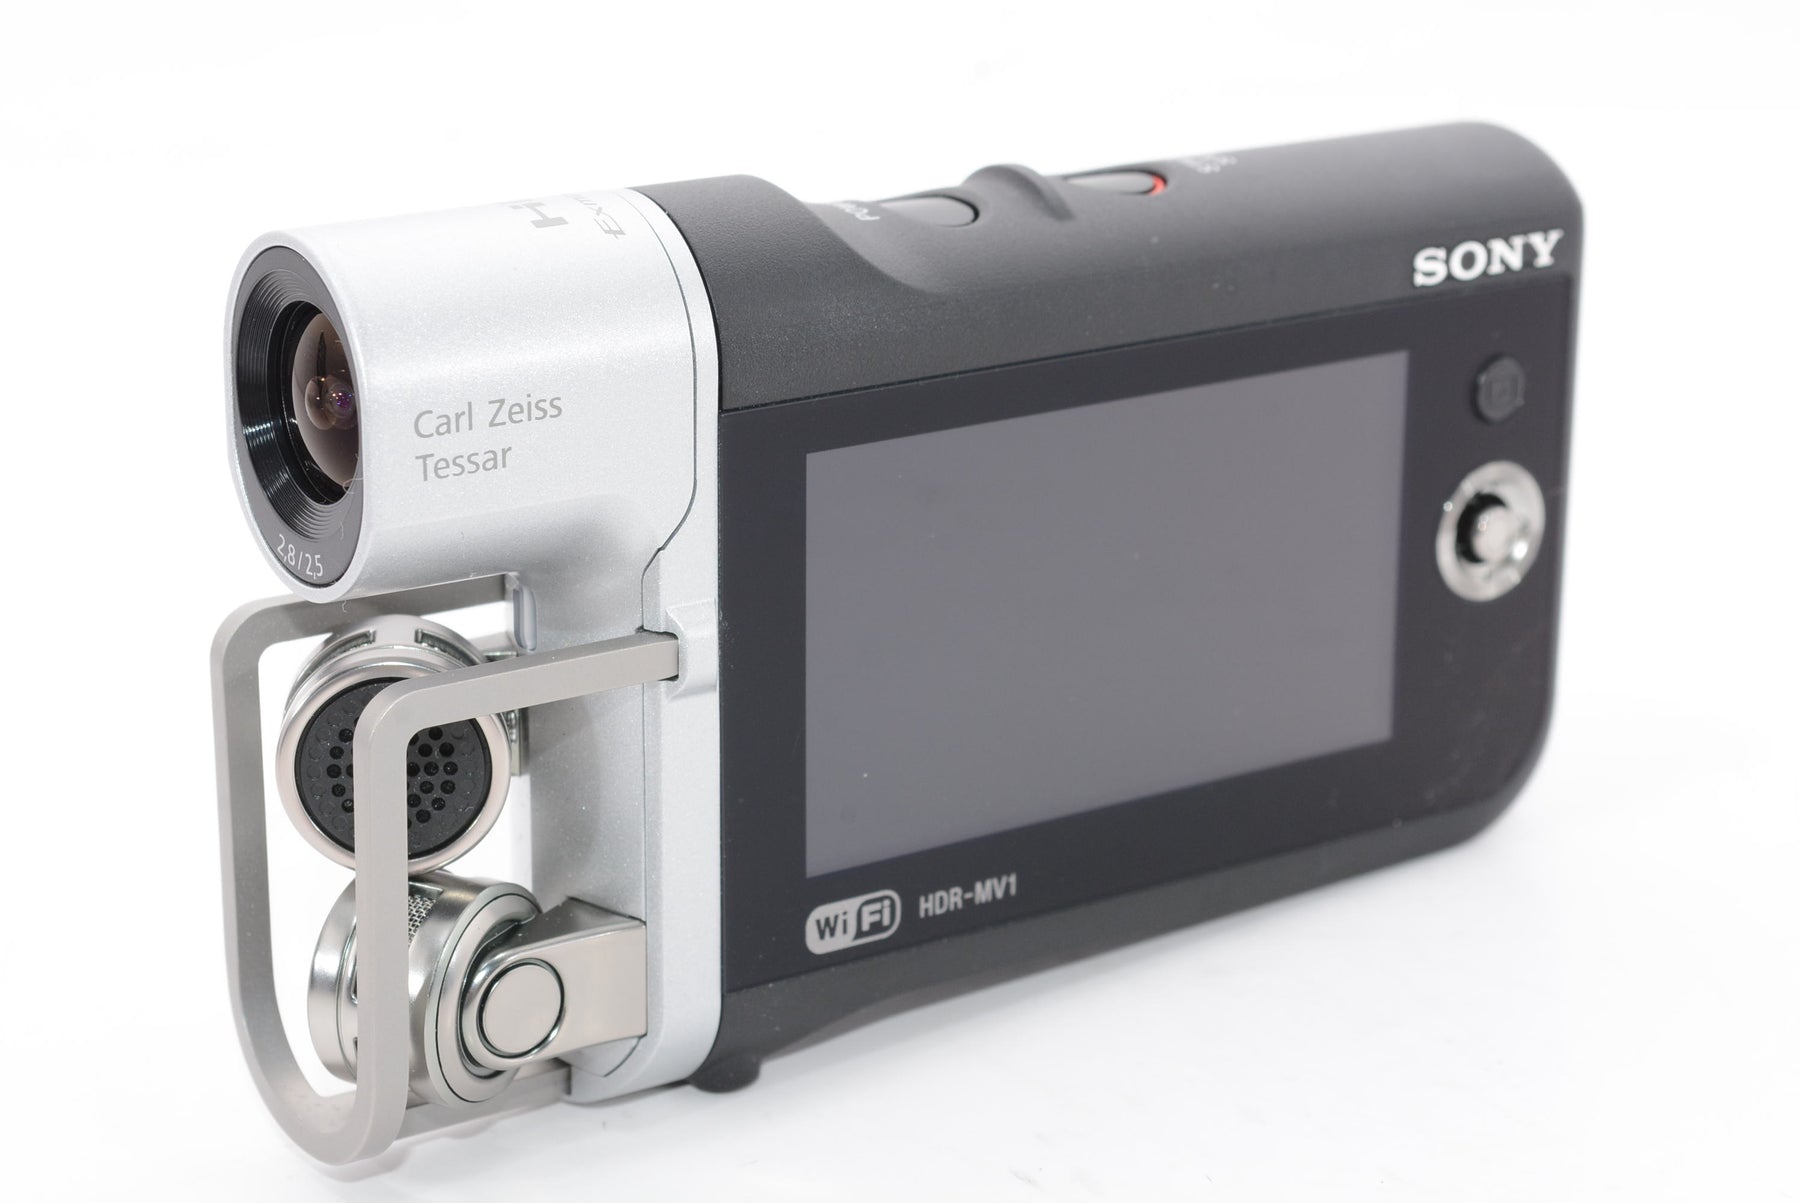 【買い新作】ソニー SONY ビデオカメラ HDR-MV1 高音質 ブラック ミュージックビデオレコーダー HDR-MV1 BC ソニー